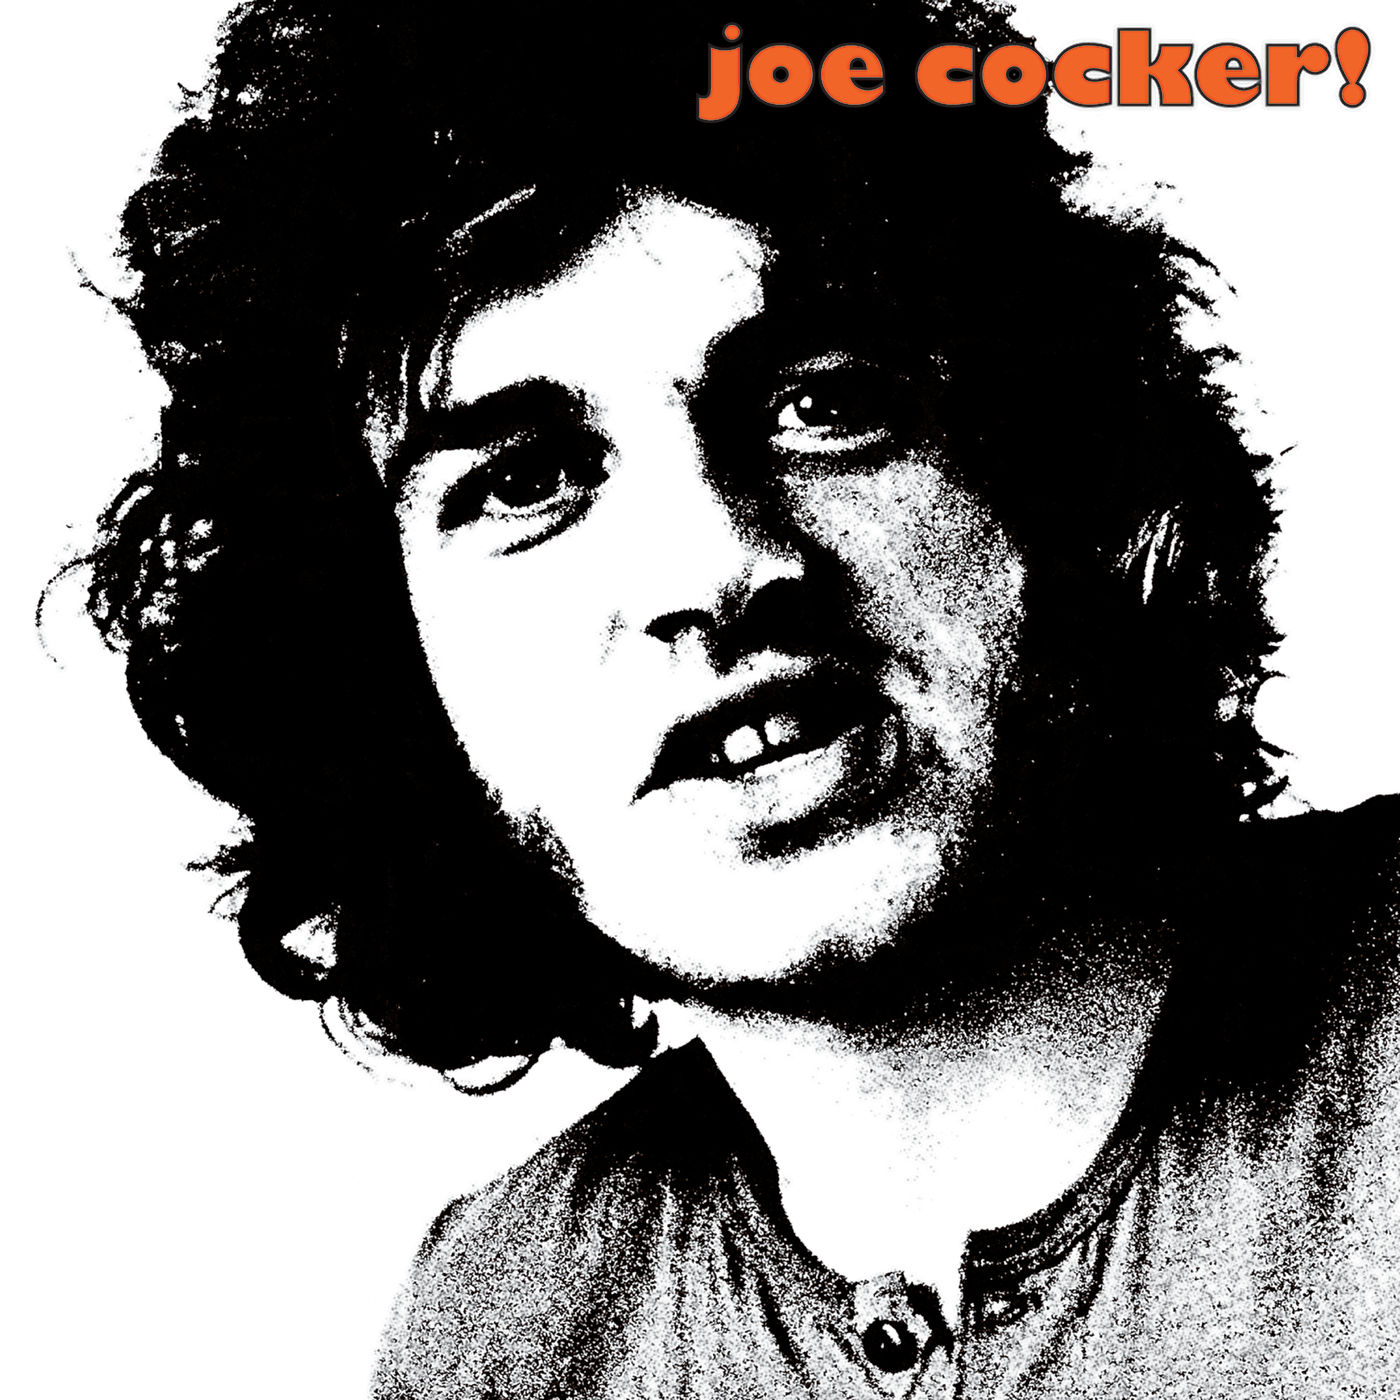 Joe Cocker - 1969 - Joe Cocker! 24-96